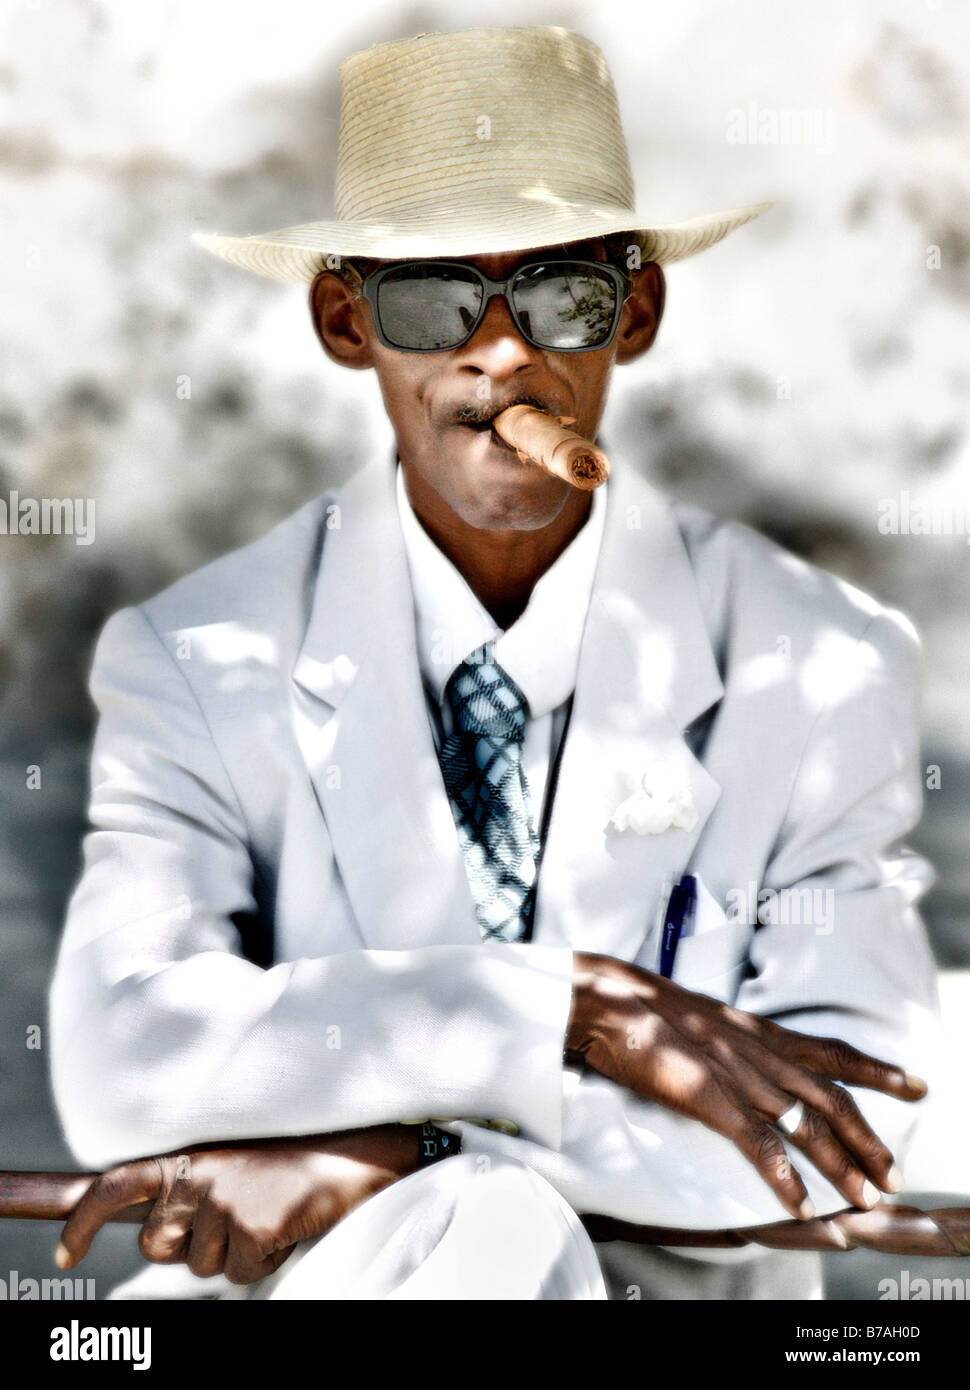 Typical old Cuban man smoking cigar Stock Photo - Alamy